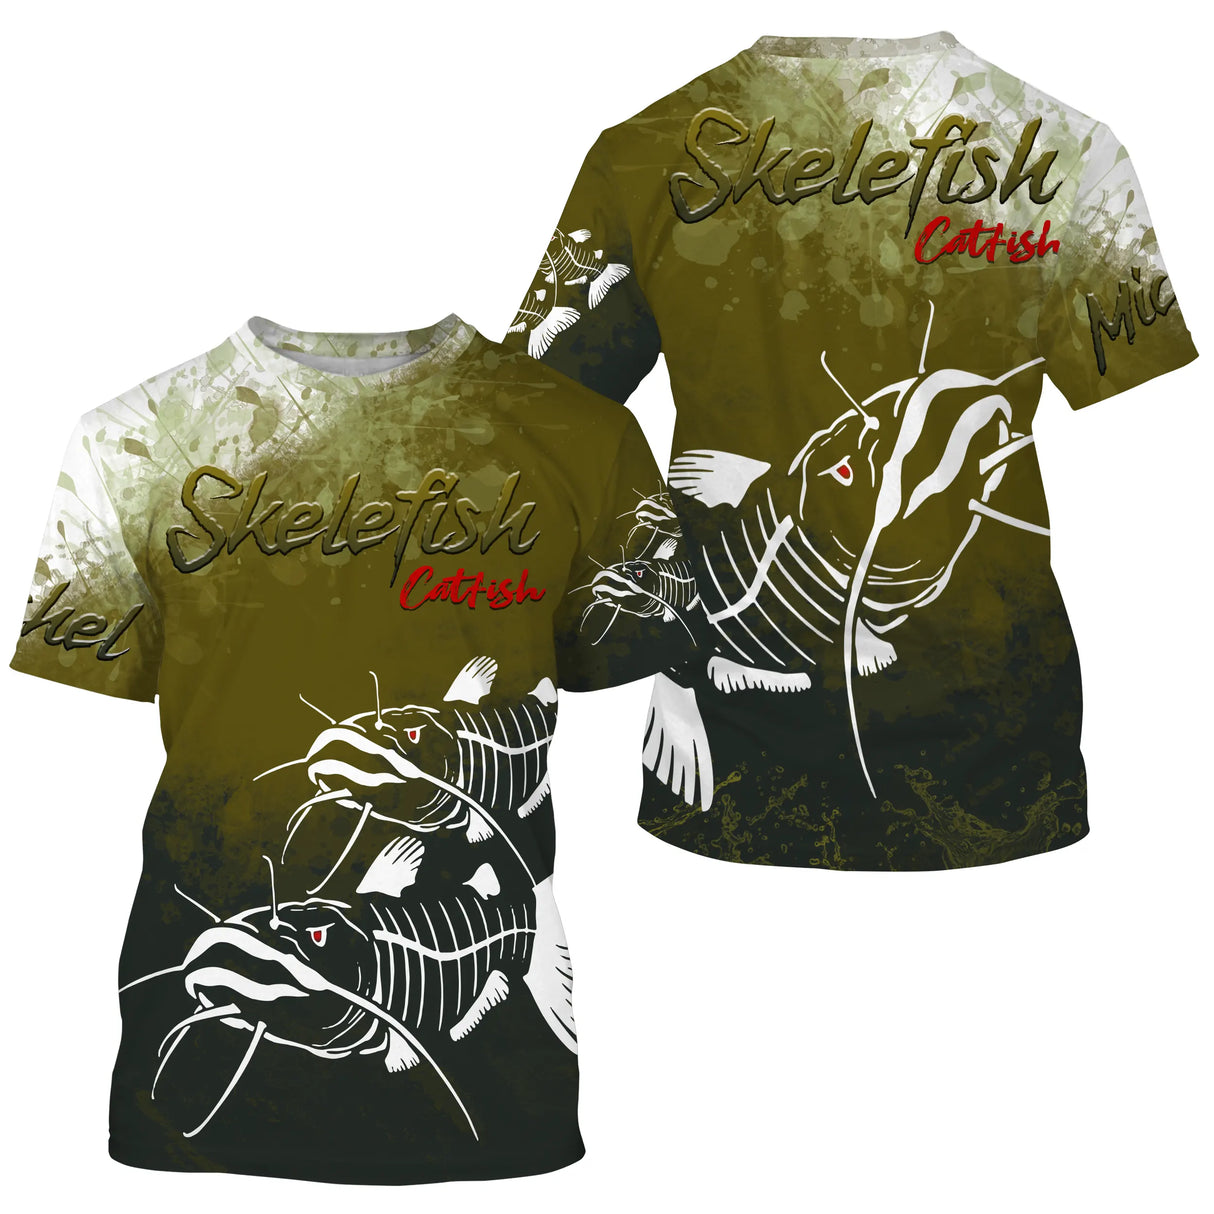 T-Shirt Anti-UV Personnalisé Pêche, Cadeau Original Pêcheur, Skelefish Catfish - CT30072231